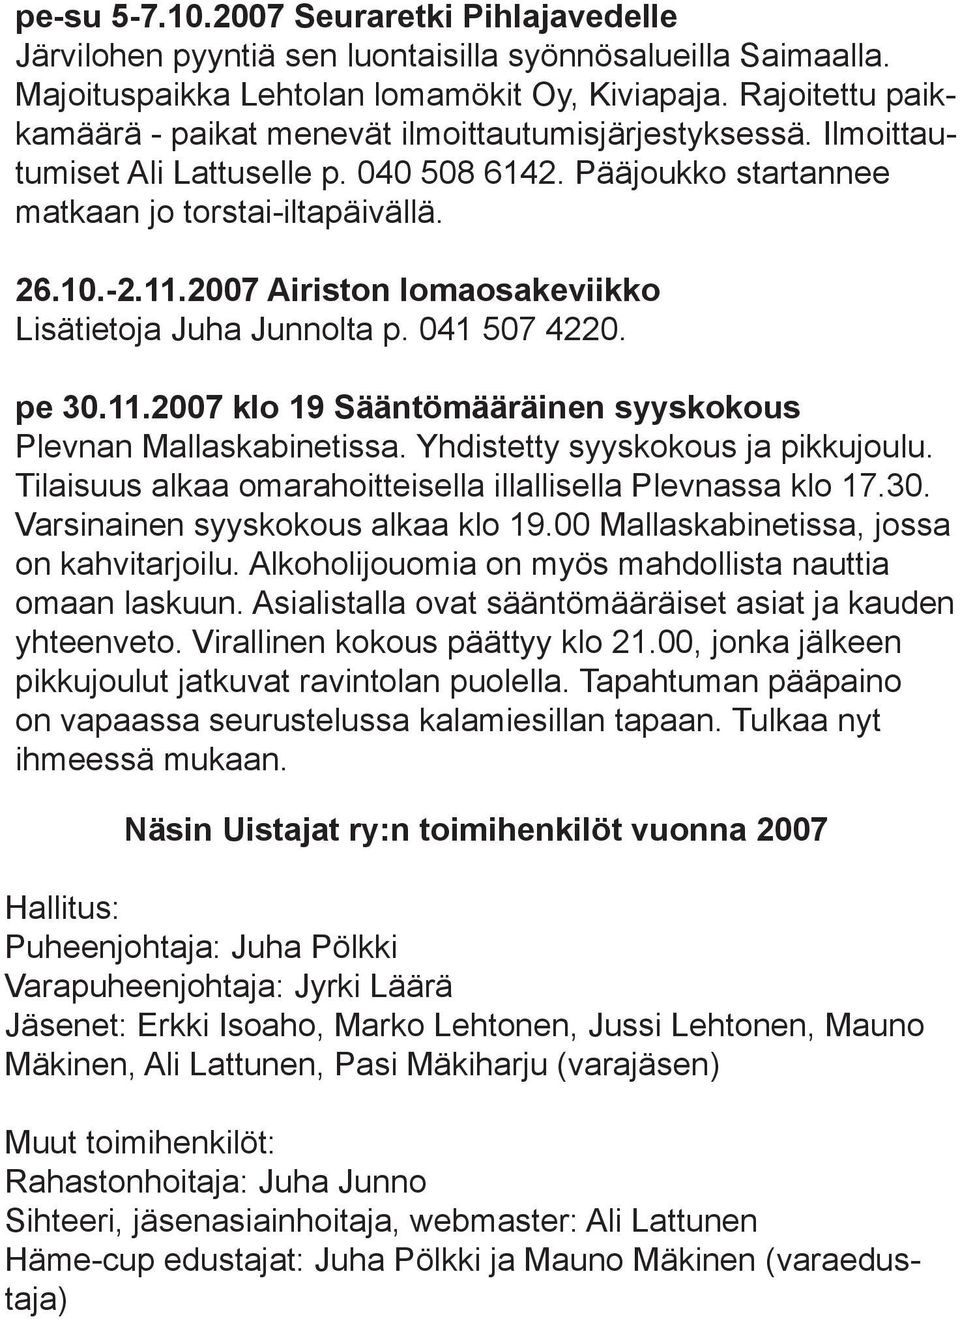 2007 Airiston lomaosakeviikko Lisätietoja Juha Junnolta p. 041 507 4220. pe 30.11.2007 klo 19 Sääntömääräinen syyskokous Plevnan Mallaskabinetissa. Yhdistetty syyskokous ja pikkujoulu.